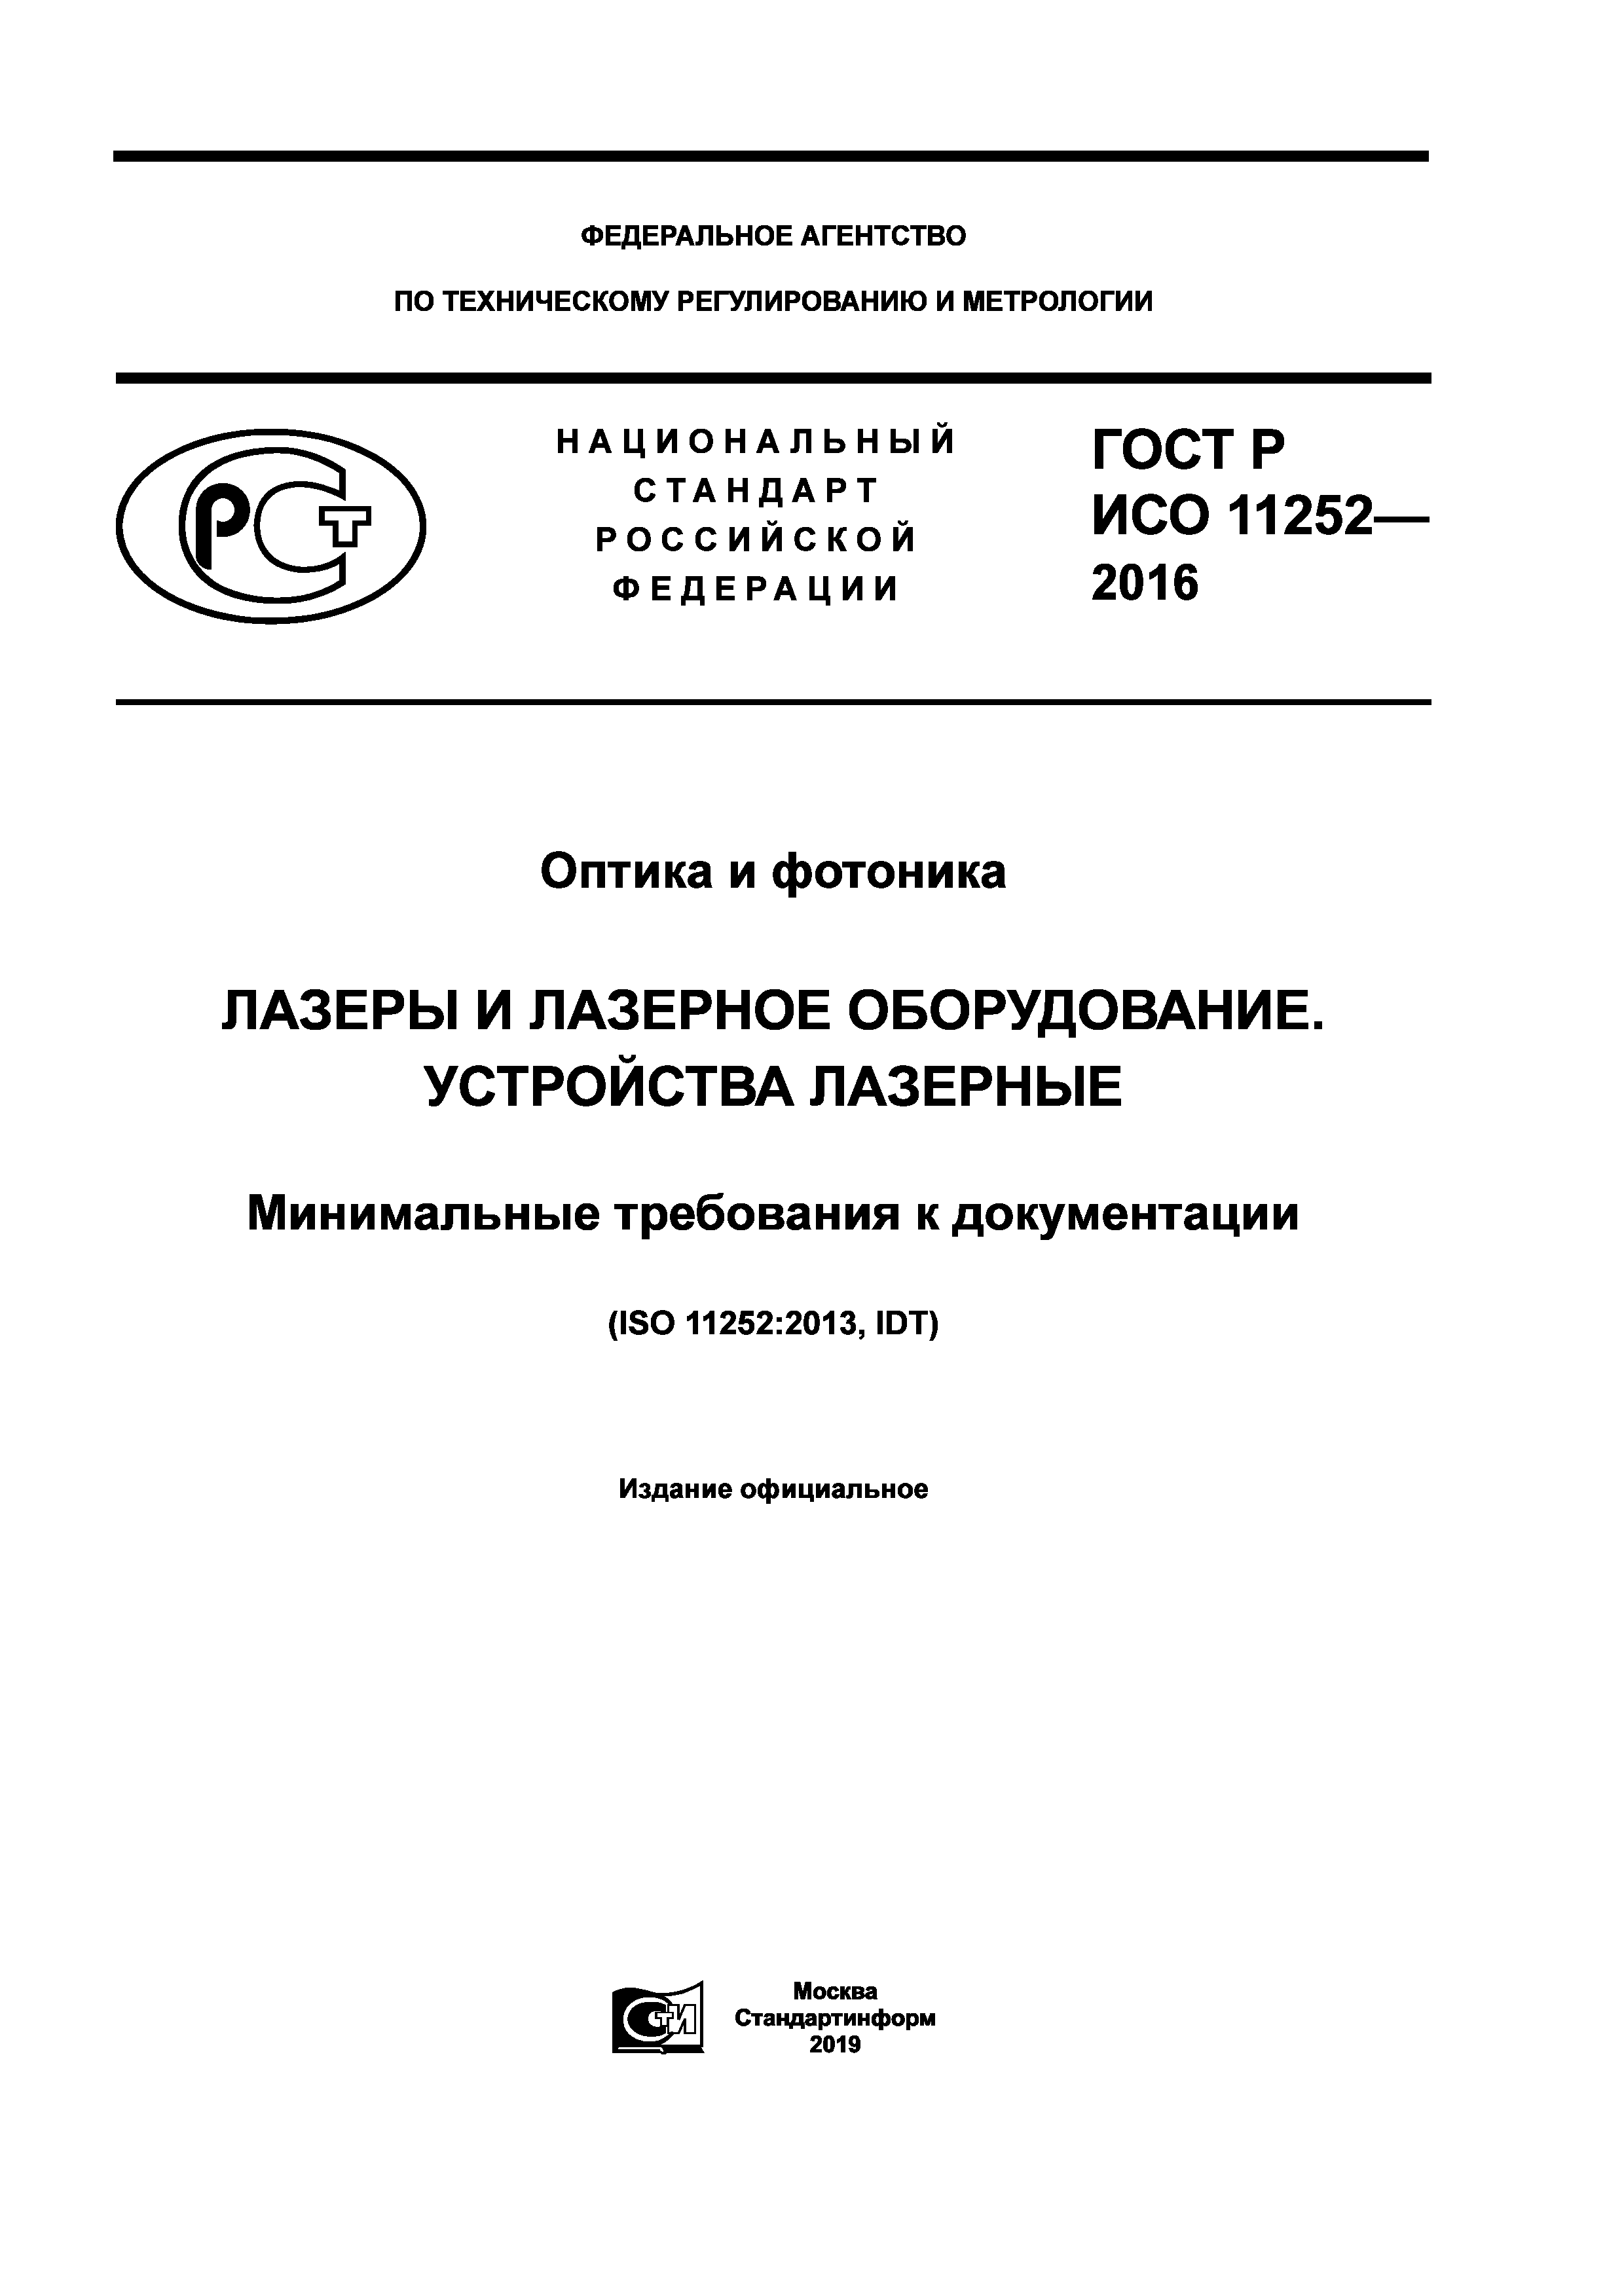 ГОСТ Р ИСО 11252-2016